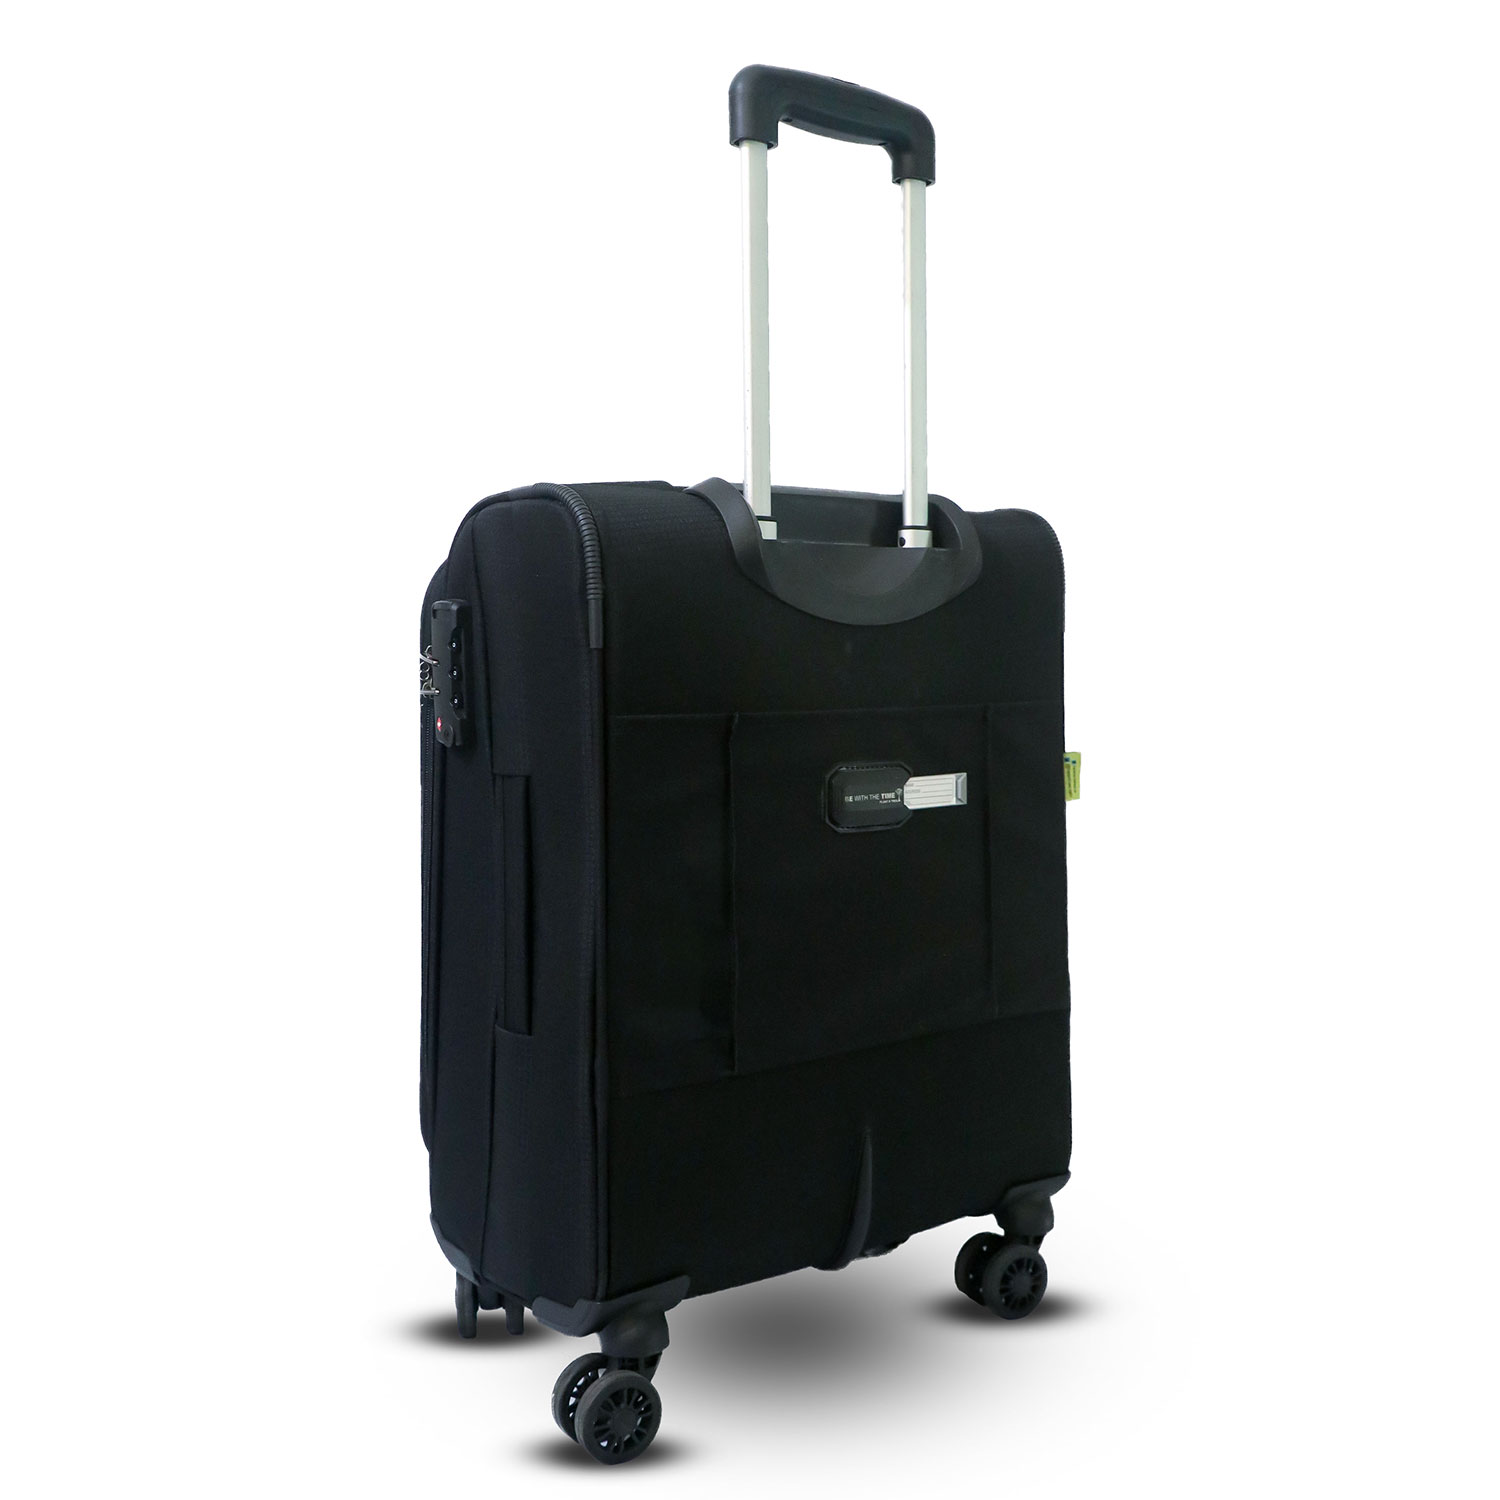 Timus-Lifestyle-Luggage-Soft-Luggage-trolley-bag-Salsa-Plus-Luggage-Trolley-Bag-58cm-Black-4